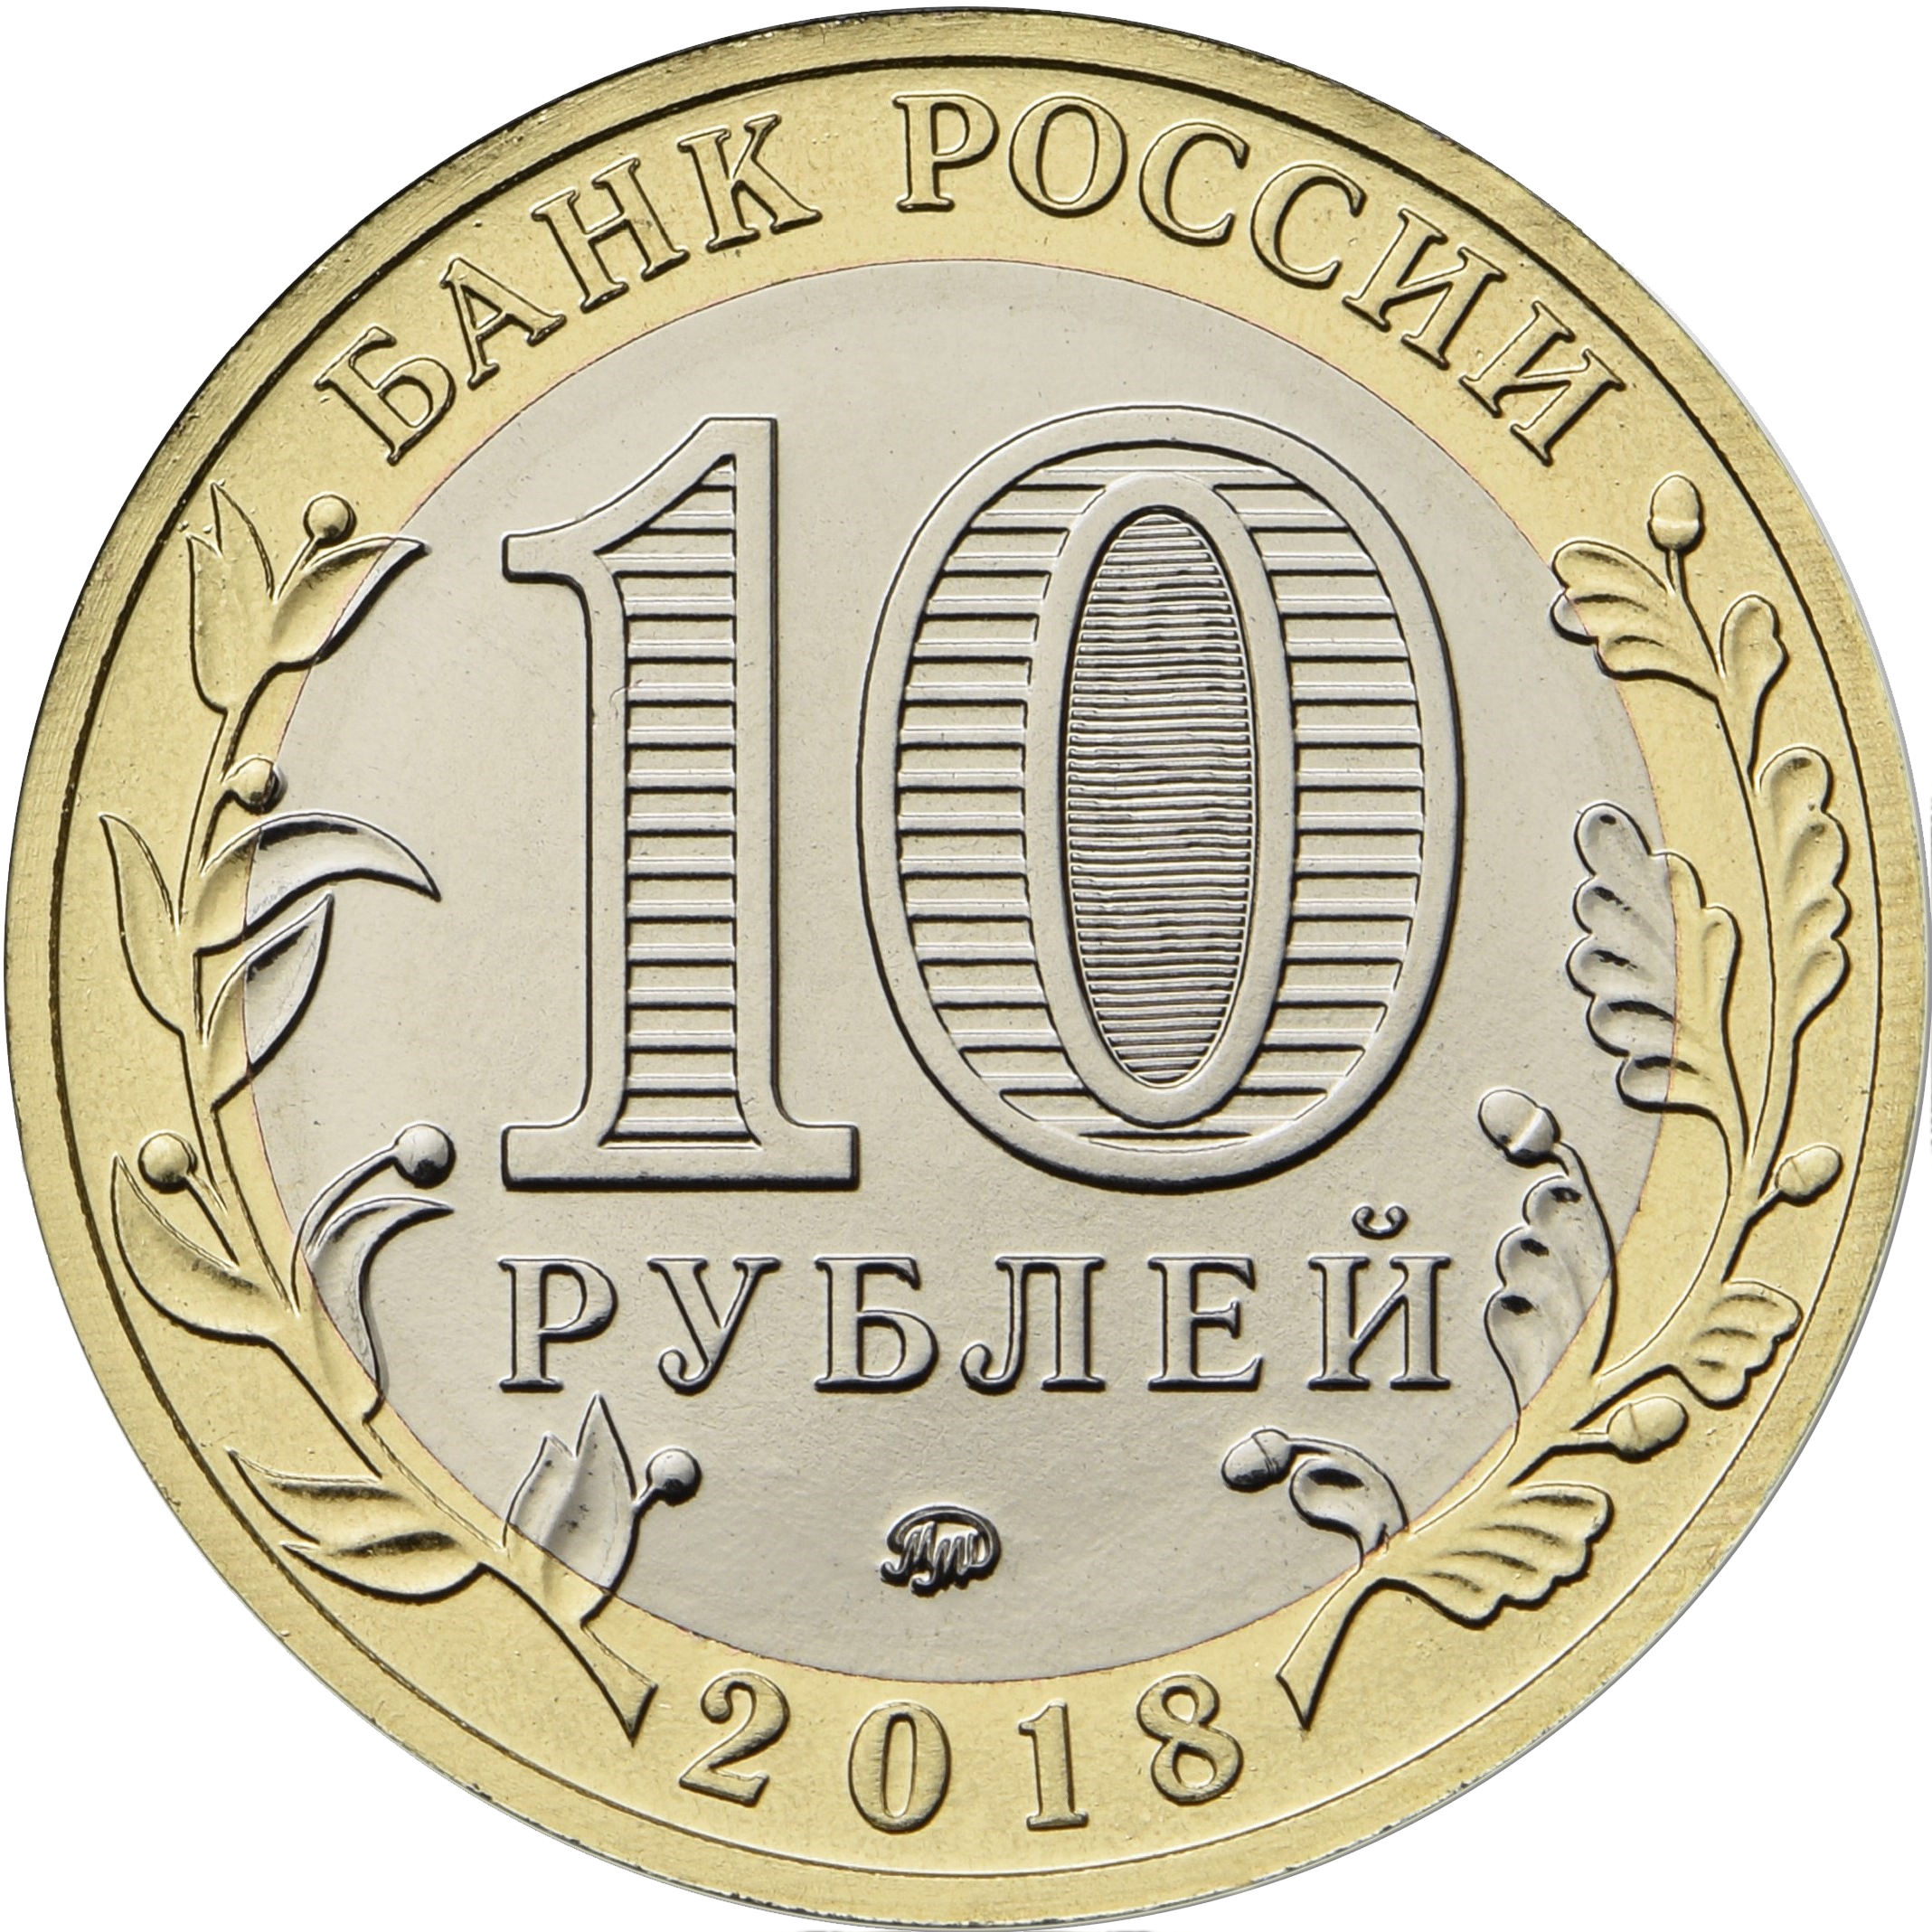 10 рублей которые стоят денег